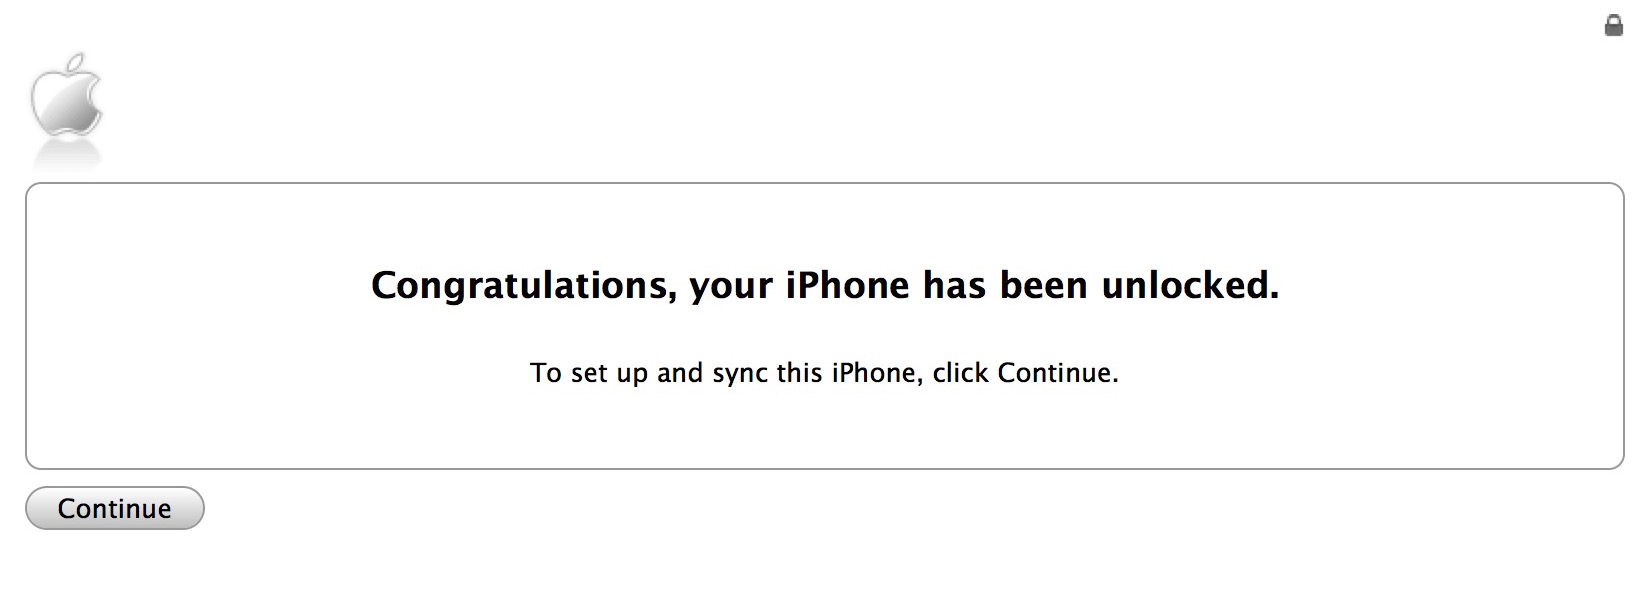 Félicitations, votre iPhone a été déverrouillé